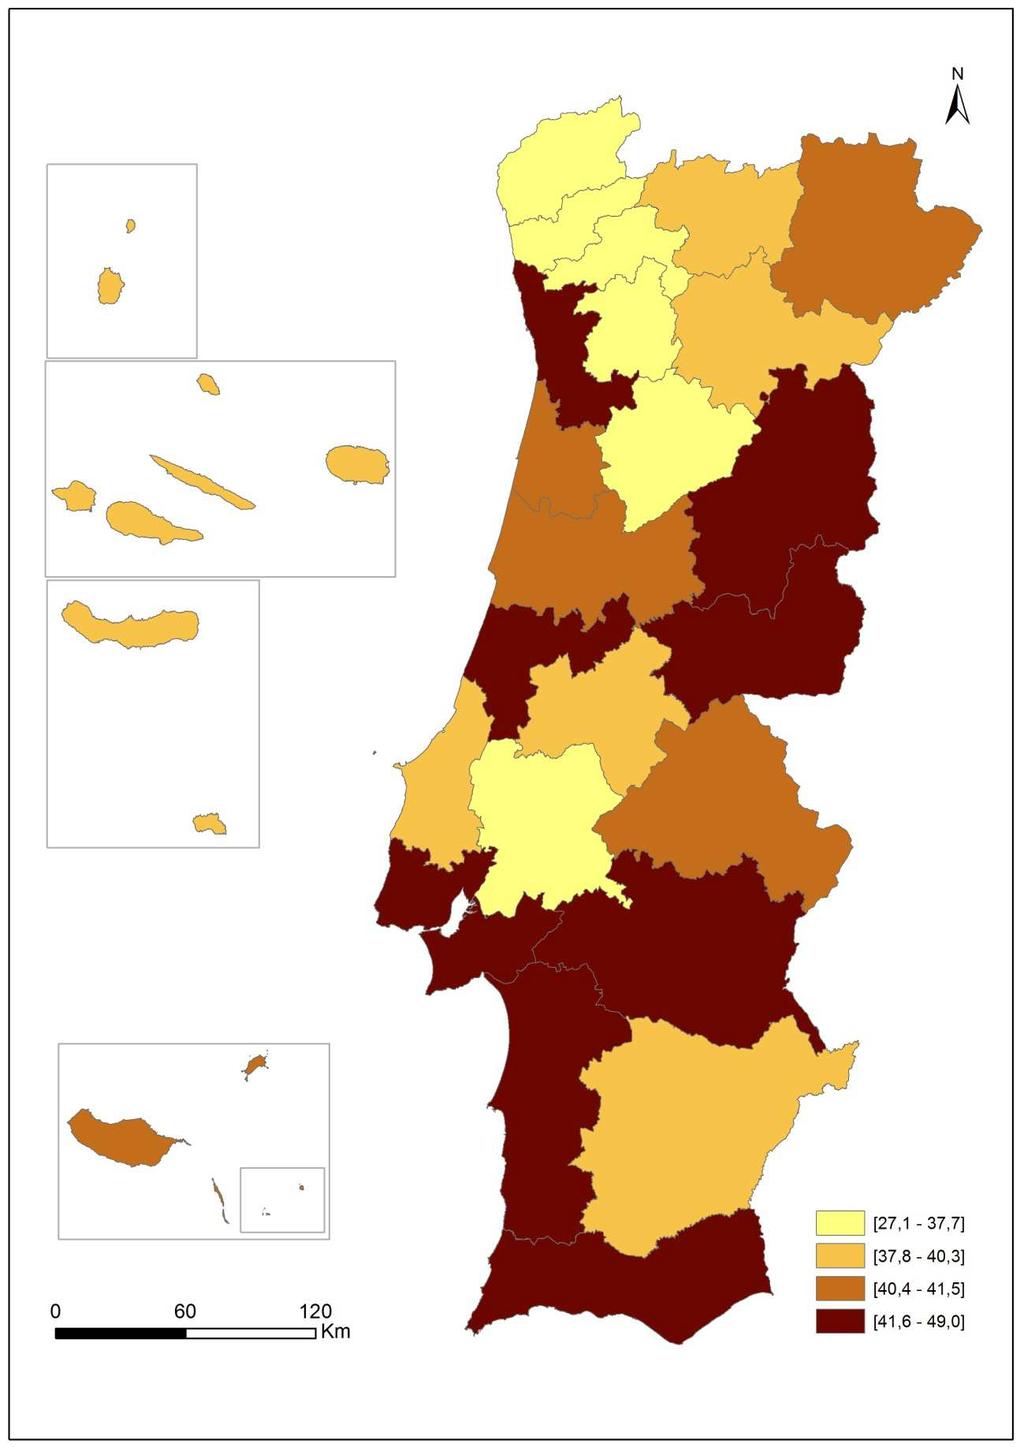 92 Em Portugal, existiam em média 42,1 acessos diretos de STF por 100 habitantes, distribuídos de forma pouco homogénea pelo território nacional variando entre o valor mínimo na região de Tâmega e